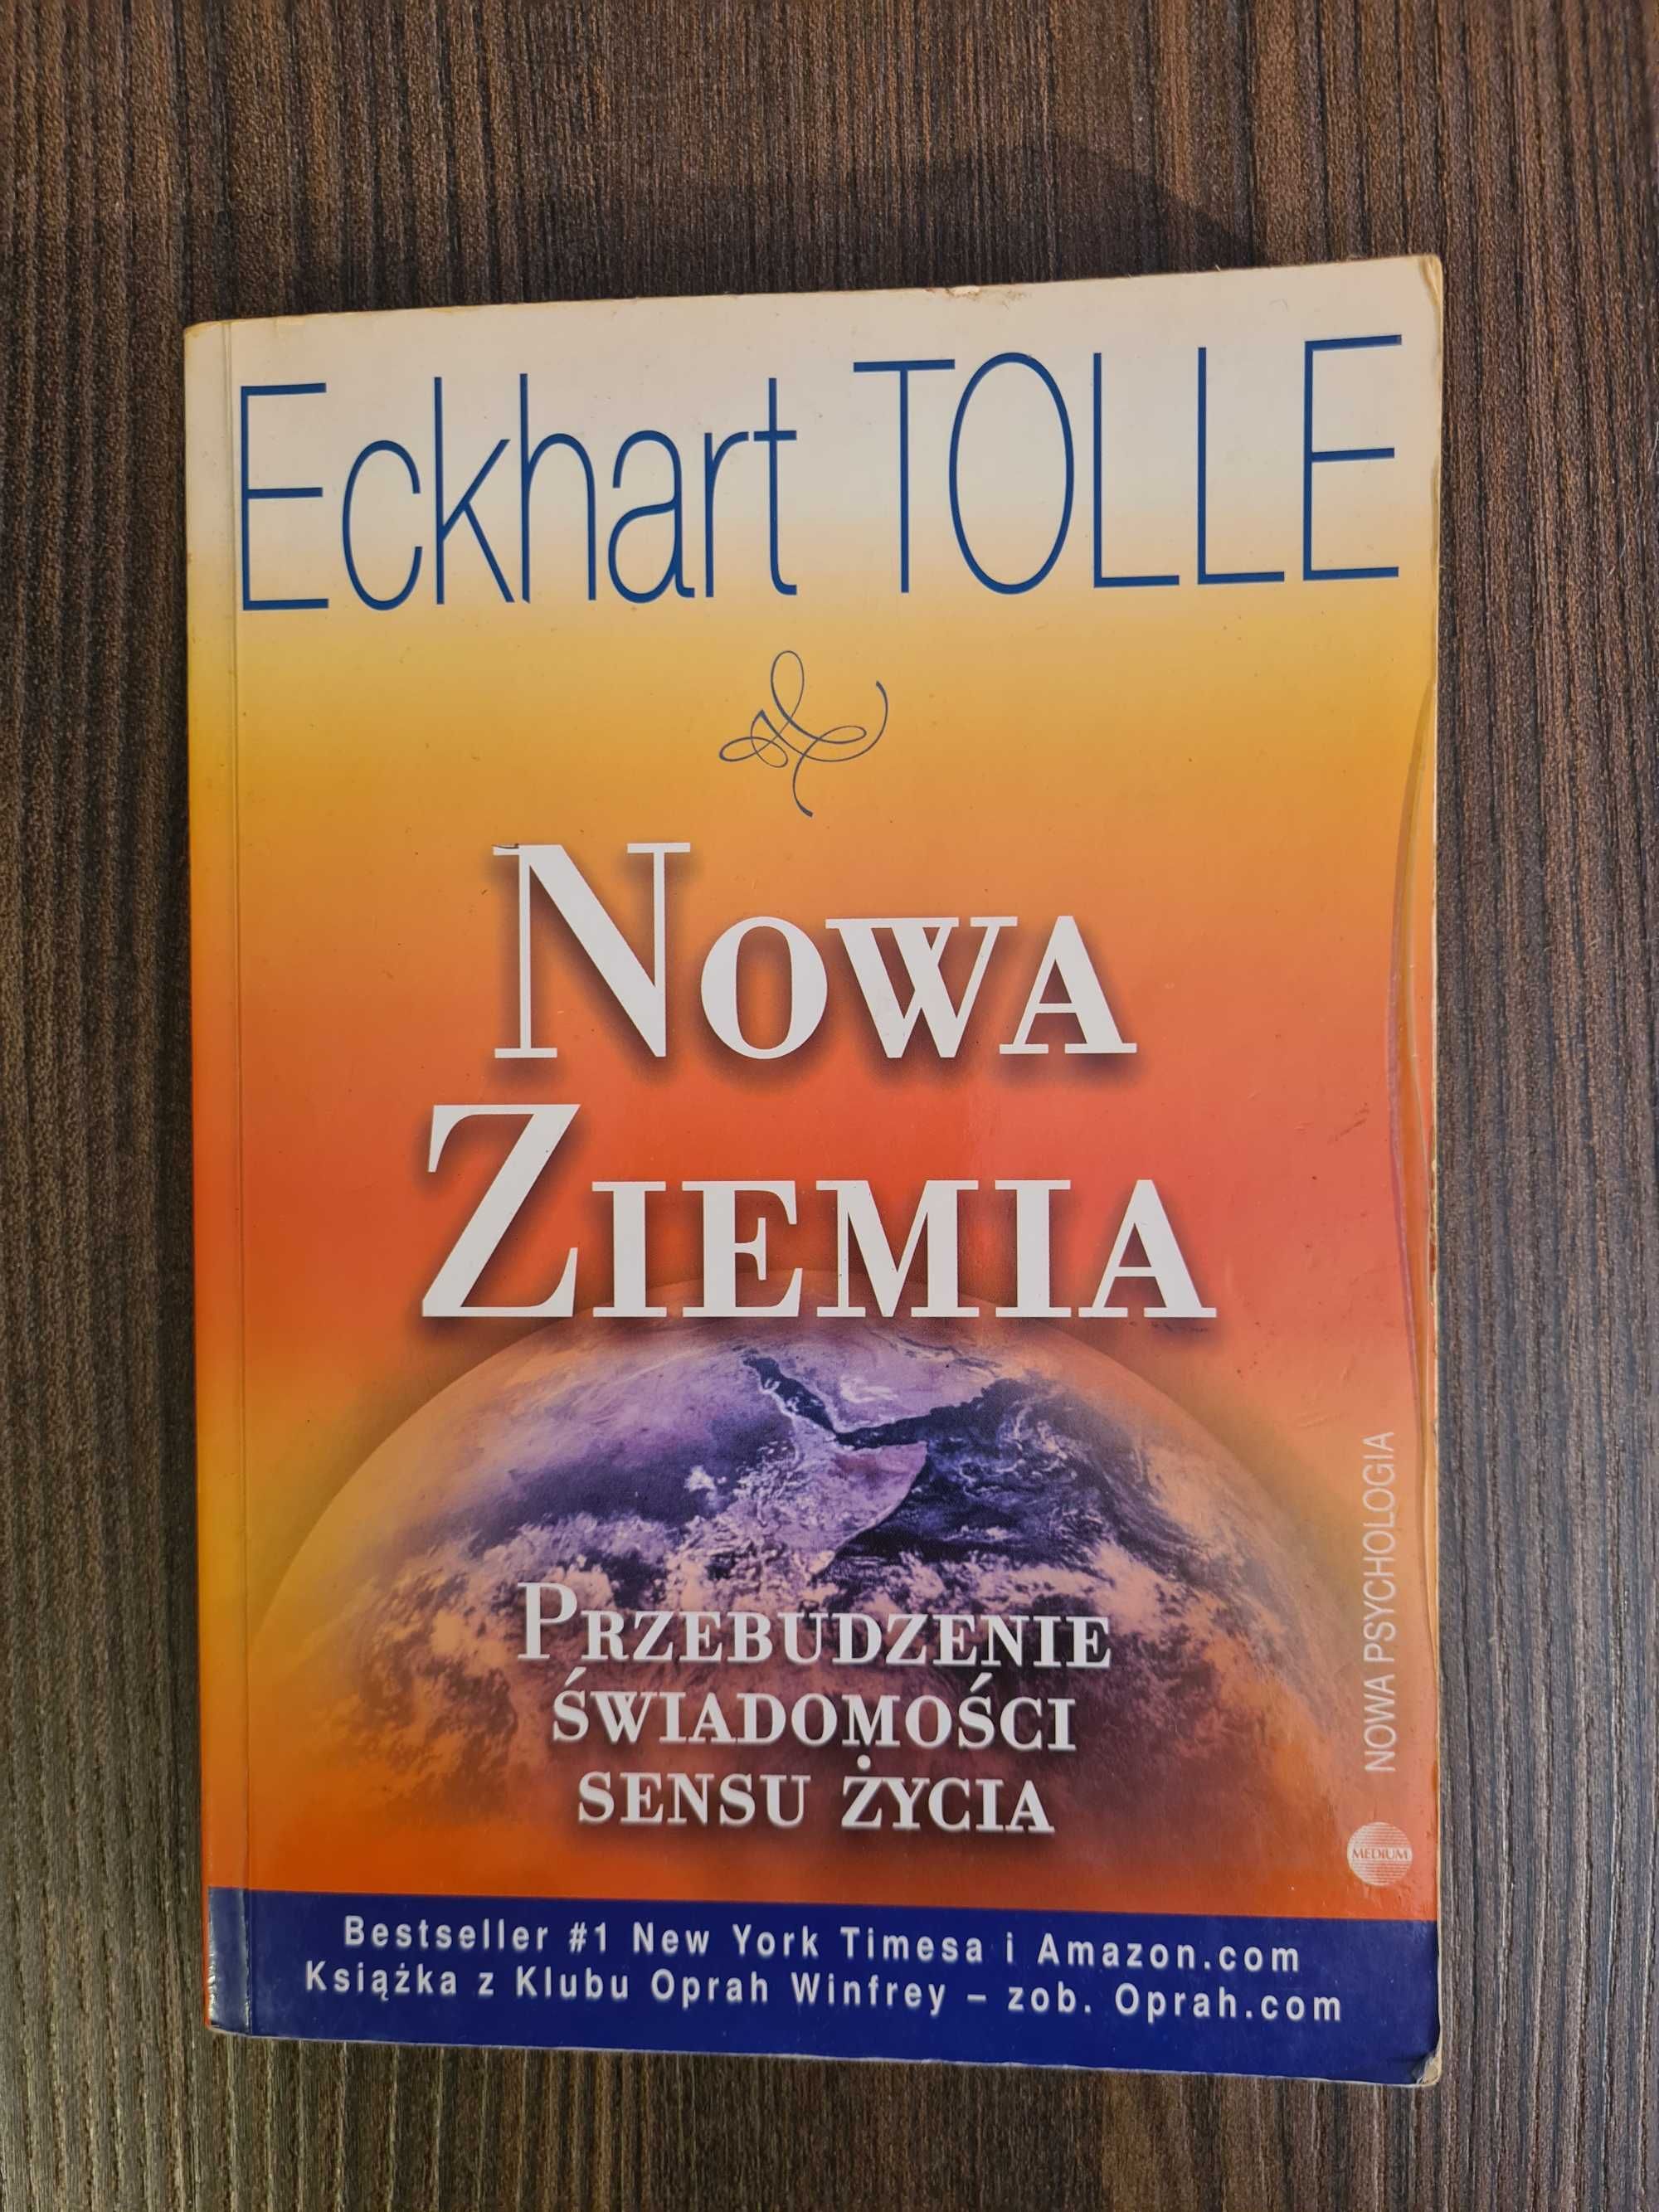 Eckhart Tolle - Nowa Ziemia, Przebudzenie świadomości sensu życia